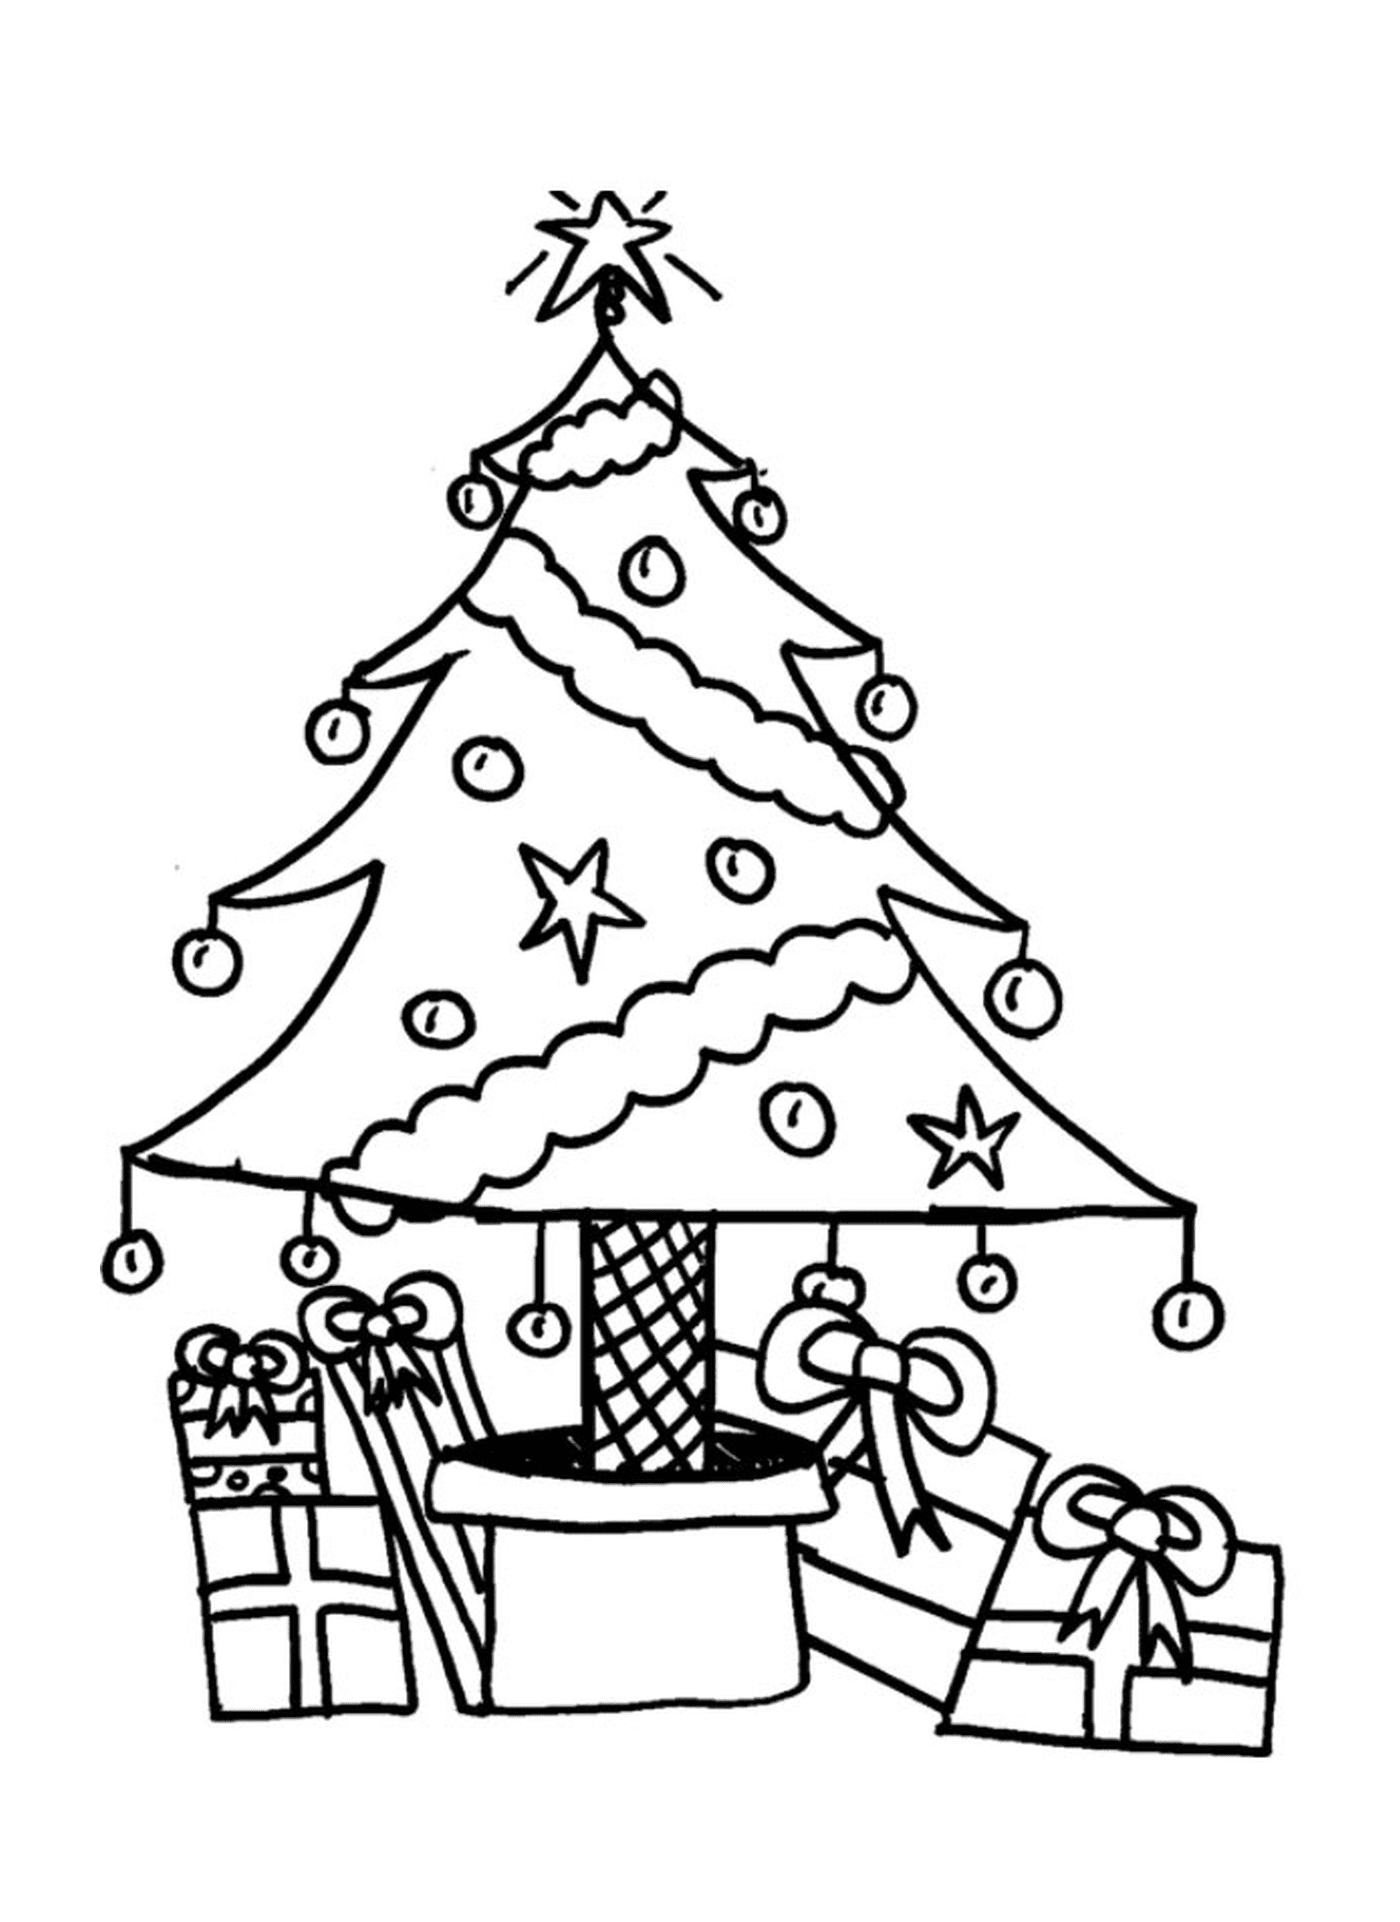  Uma árvore de Natal com presentes sob ela 